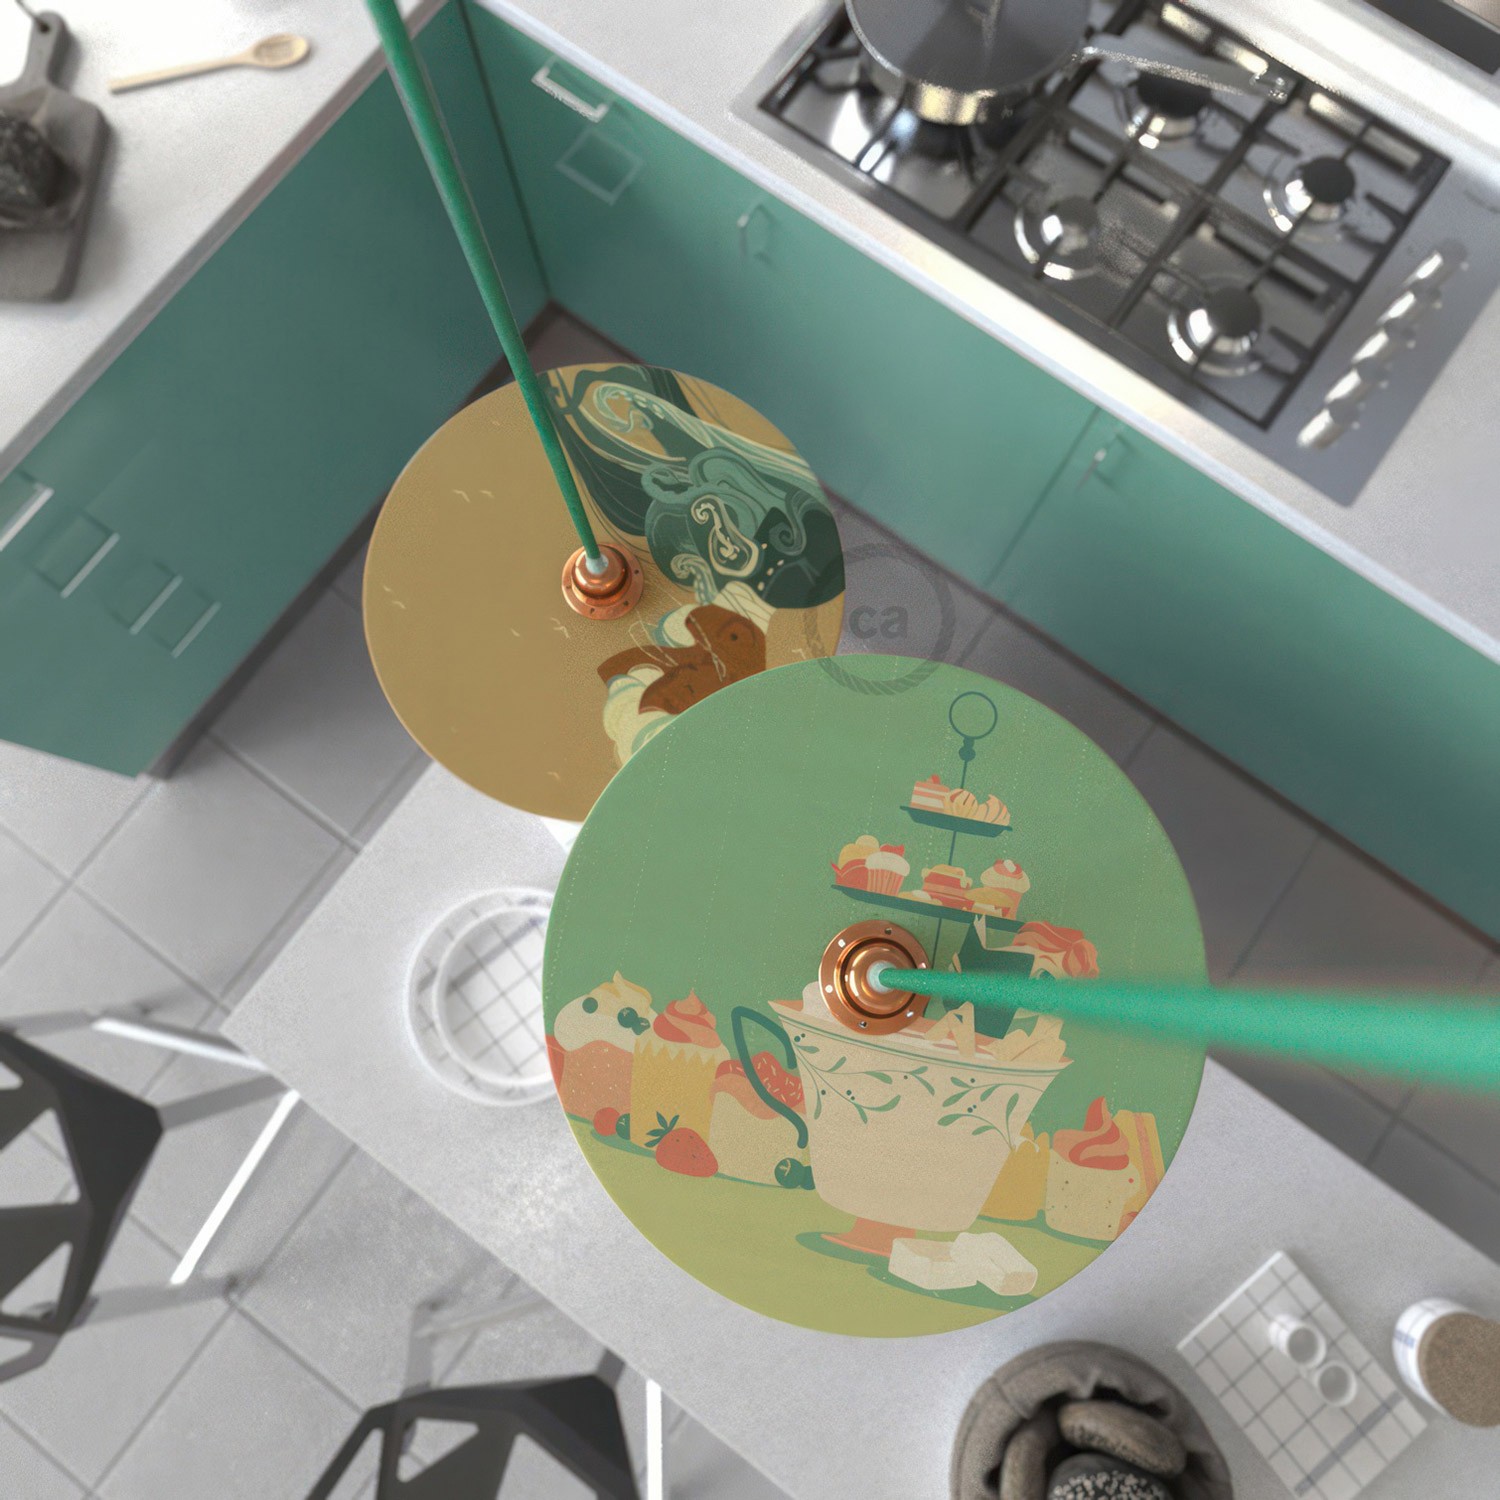 Sjenilo - UFO drveni disk s ilustracijama raznih umjetnika, promjer 33 cm, obostrano ilustriran